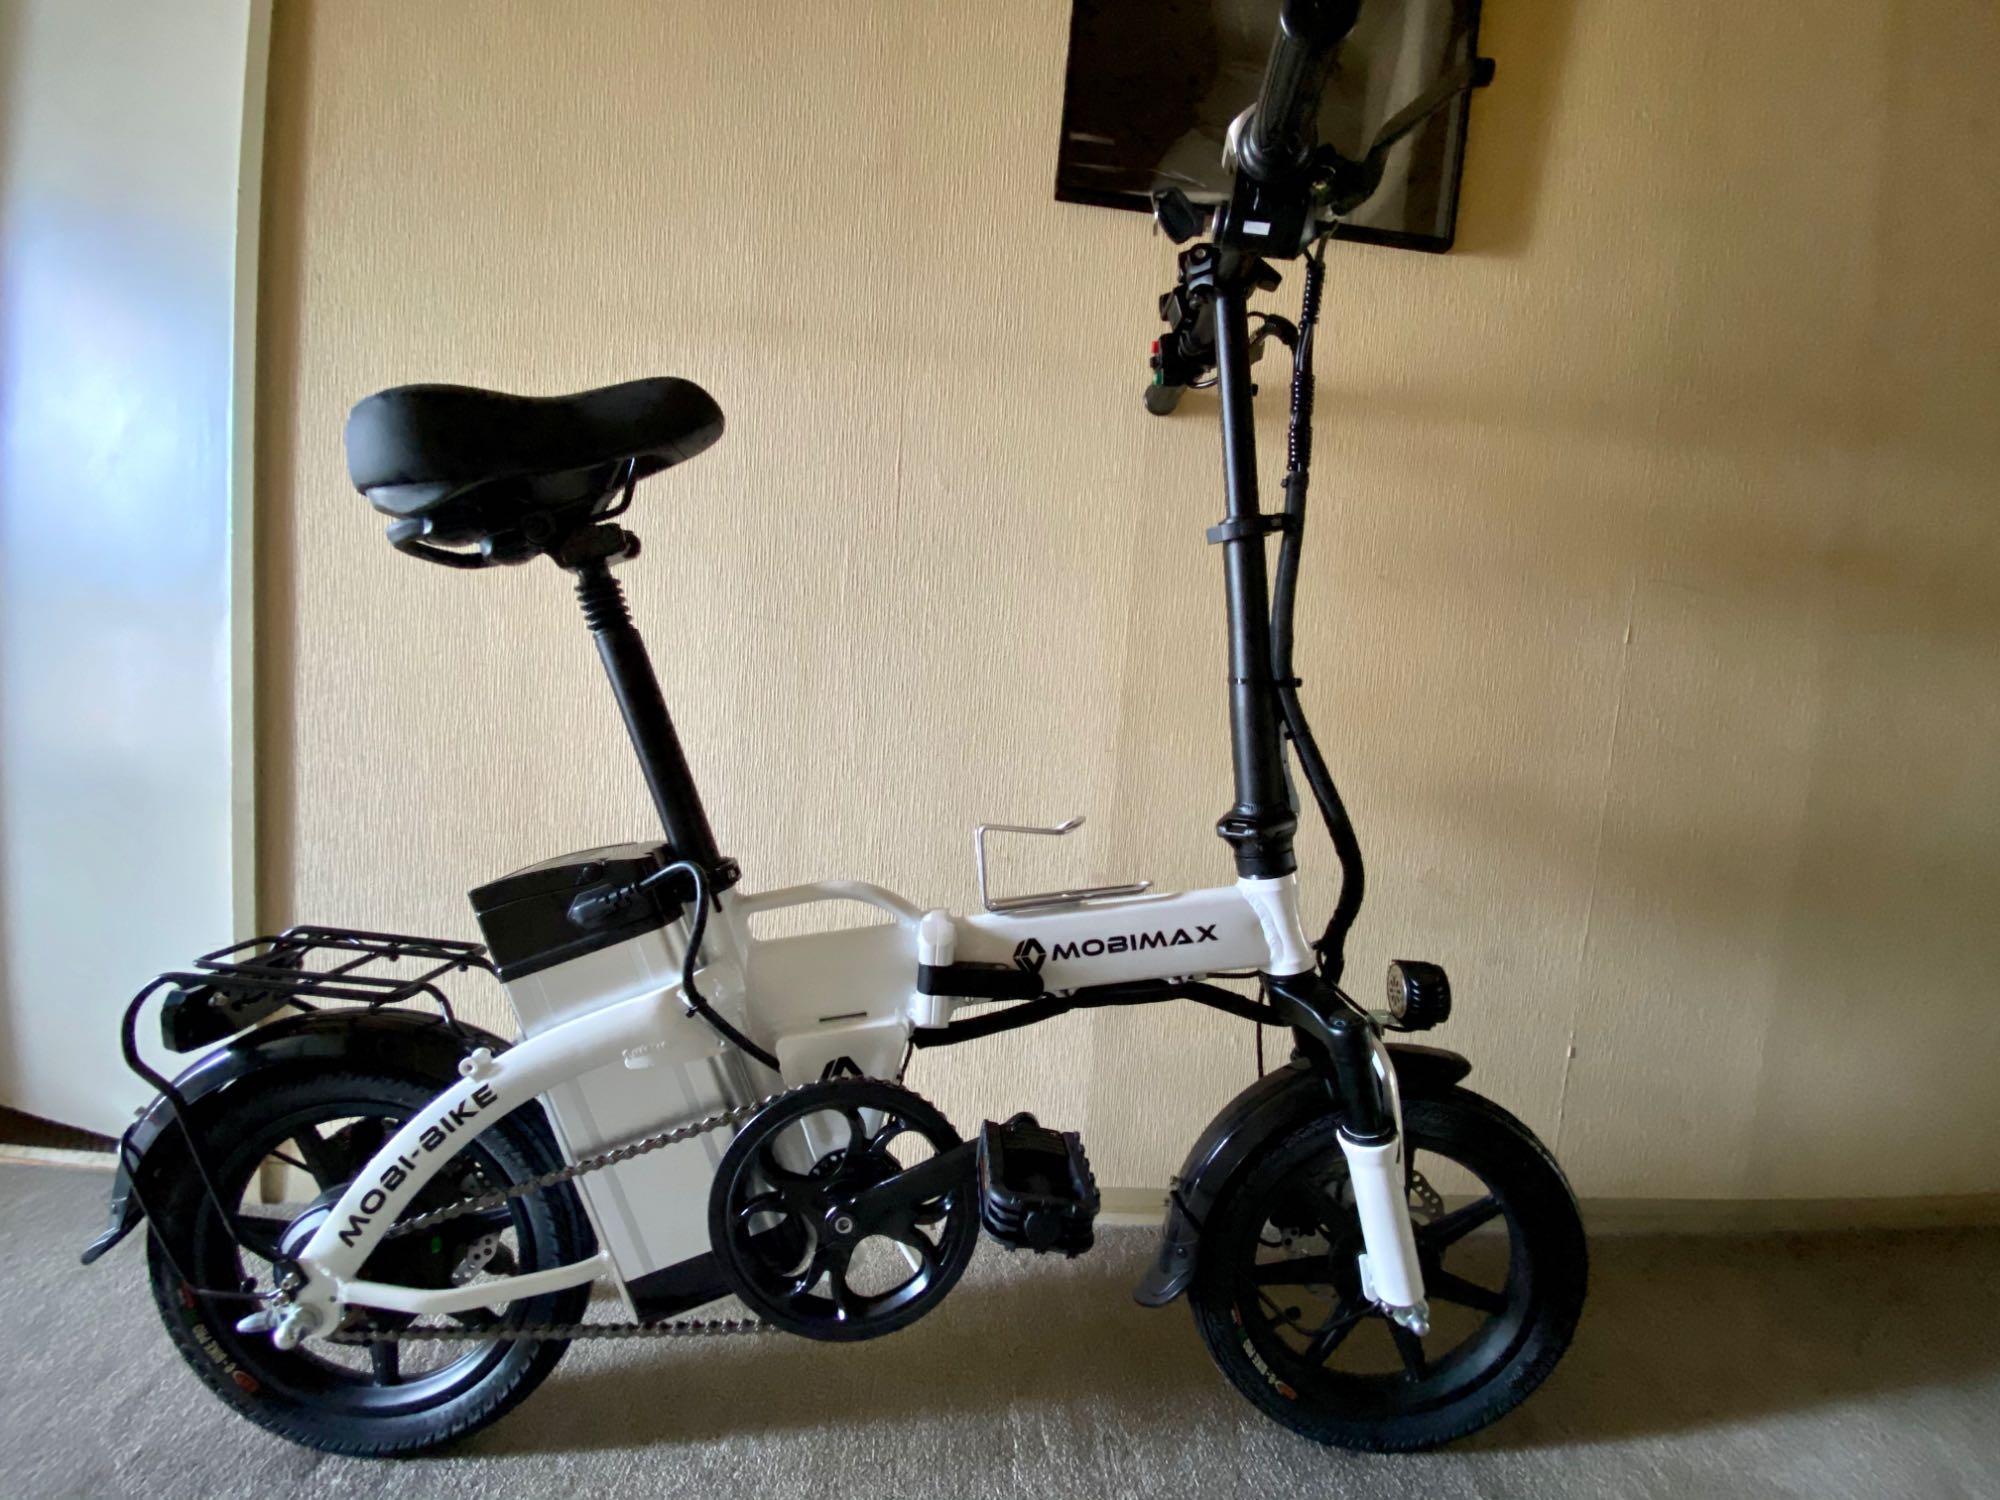 特価商品 SALEフル電動自転車マックス40キロ - アクセサリー